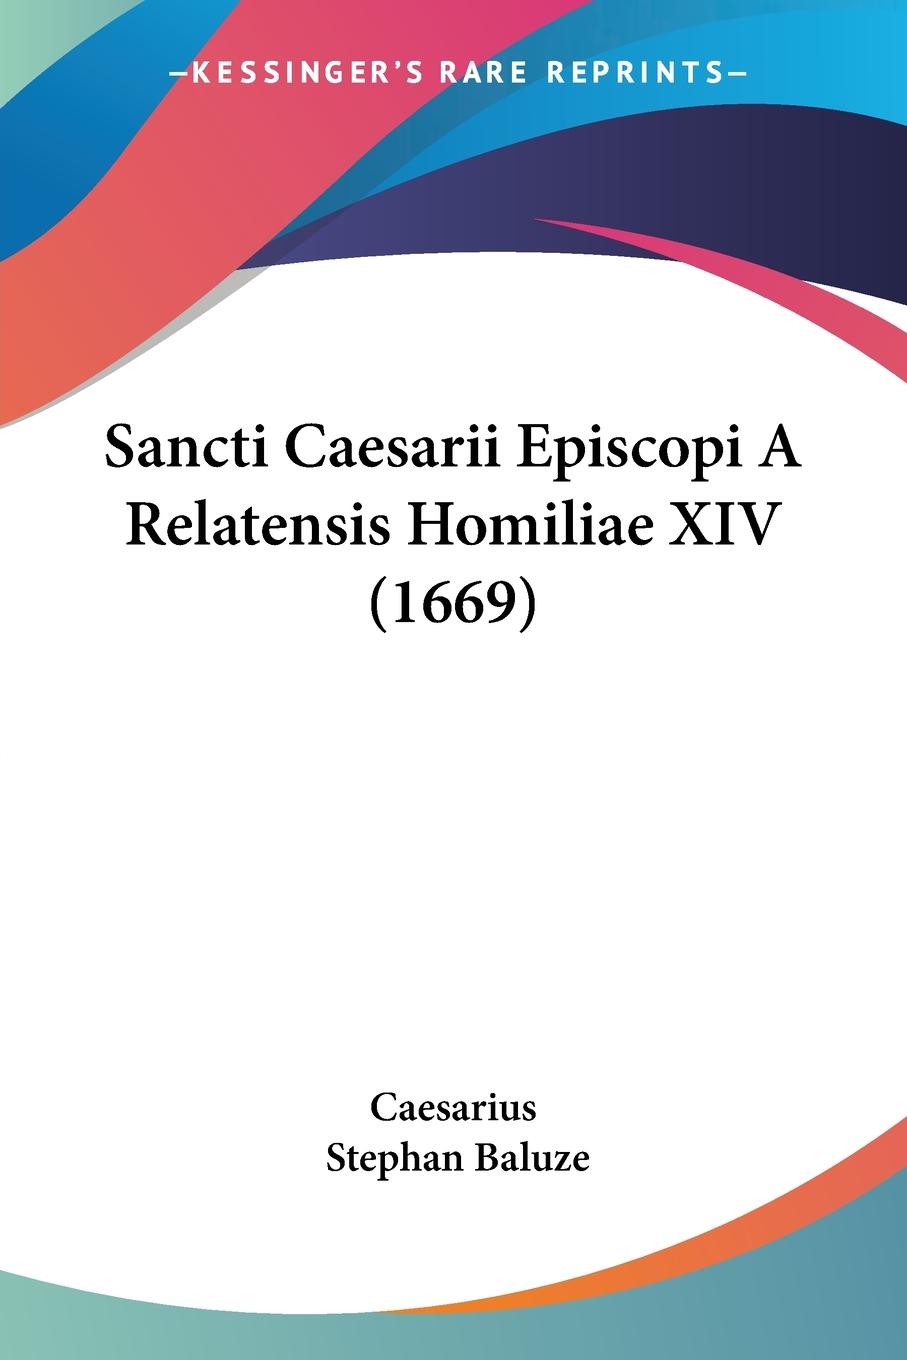 Sancti Caesarii Episcopi A Relatensis Homiliae XIV (1669) - Caesarius Baluze, Stephan